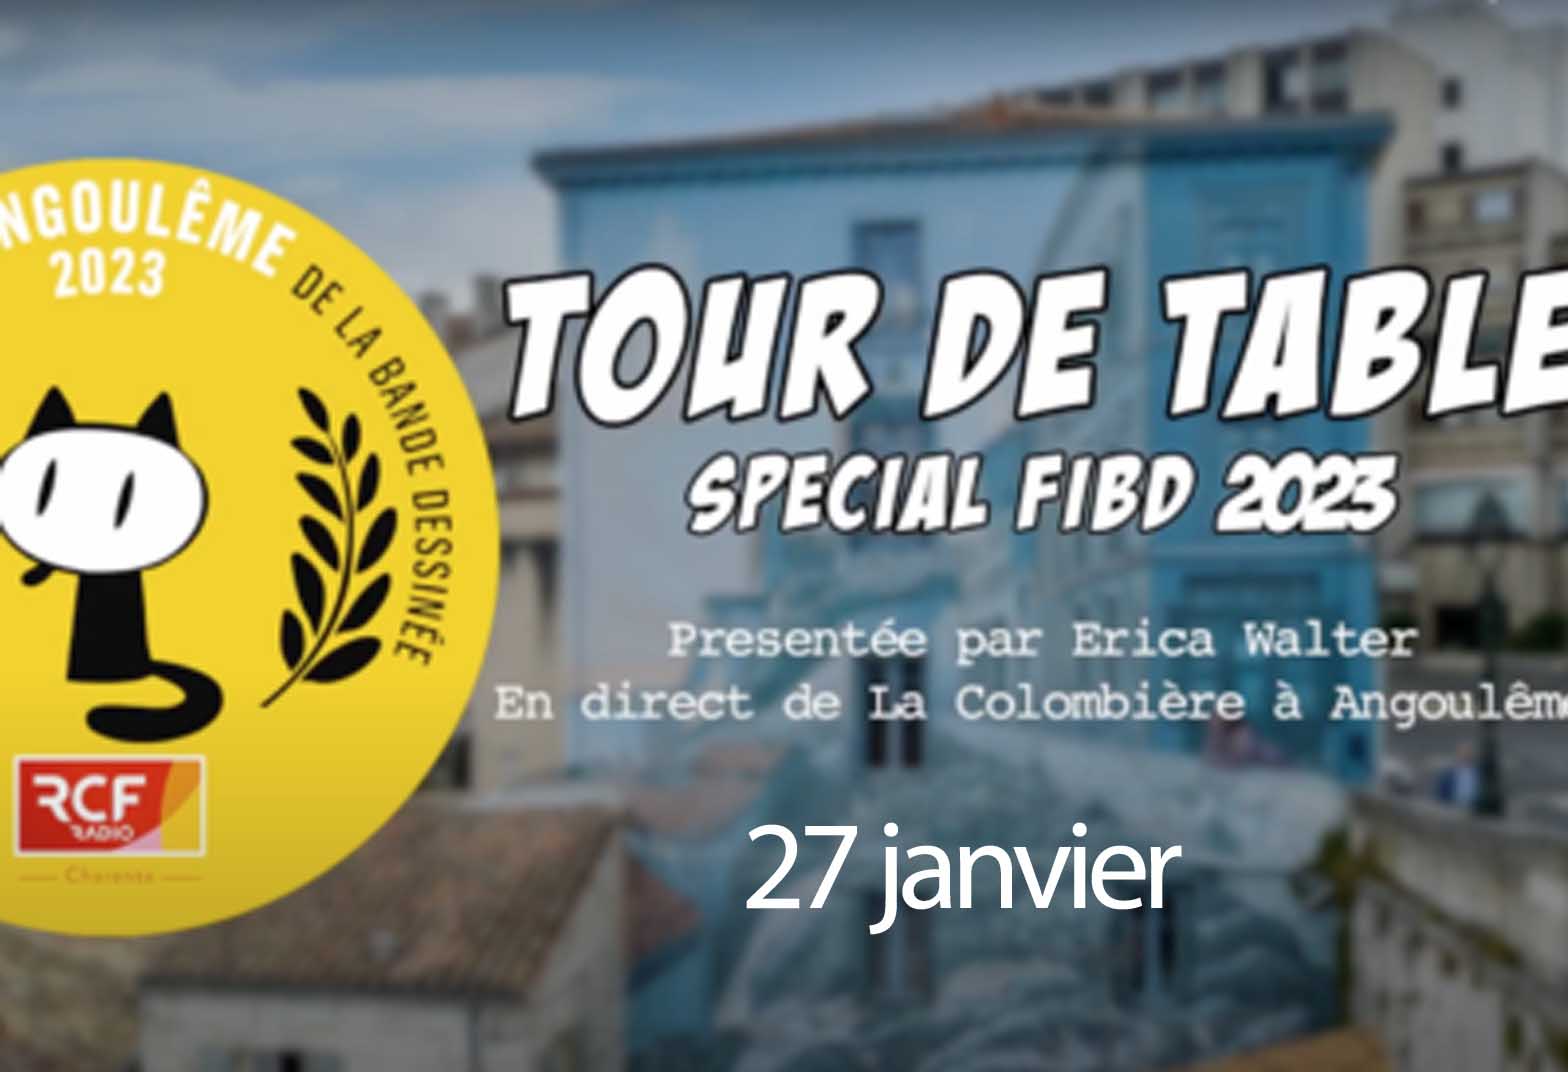 Tour de table special FIBD 2023 - 27 janvier